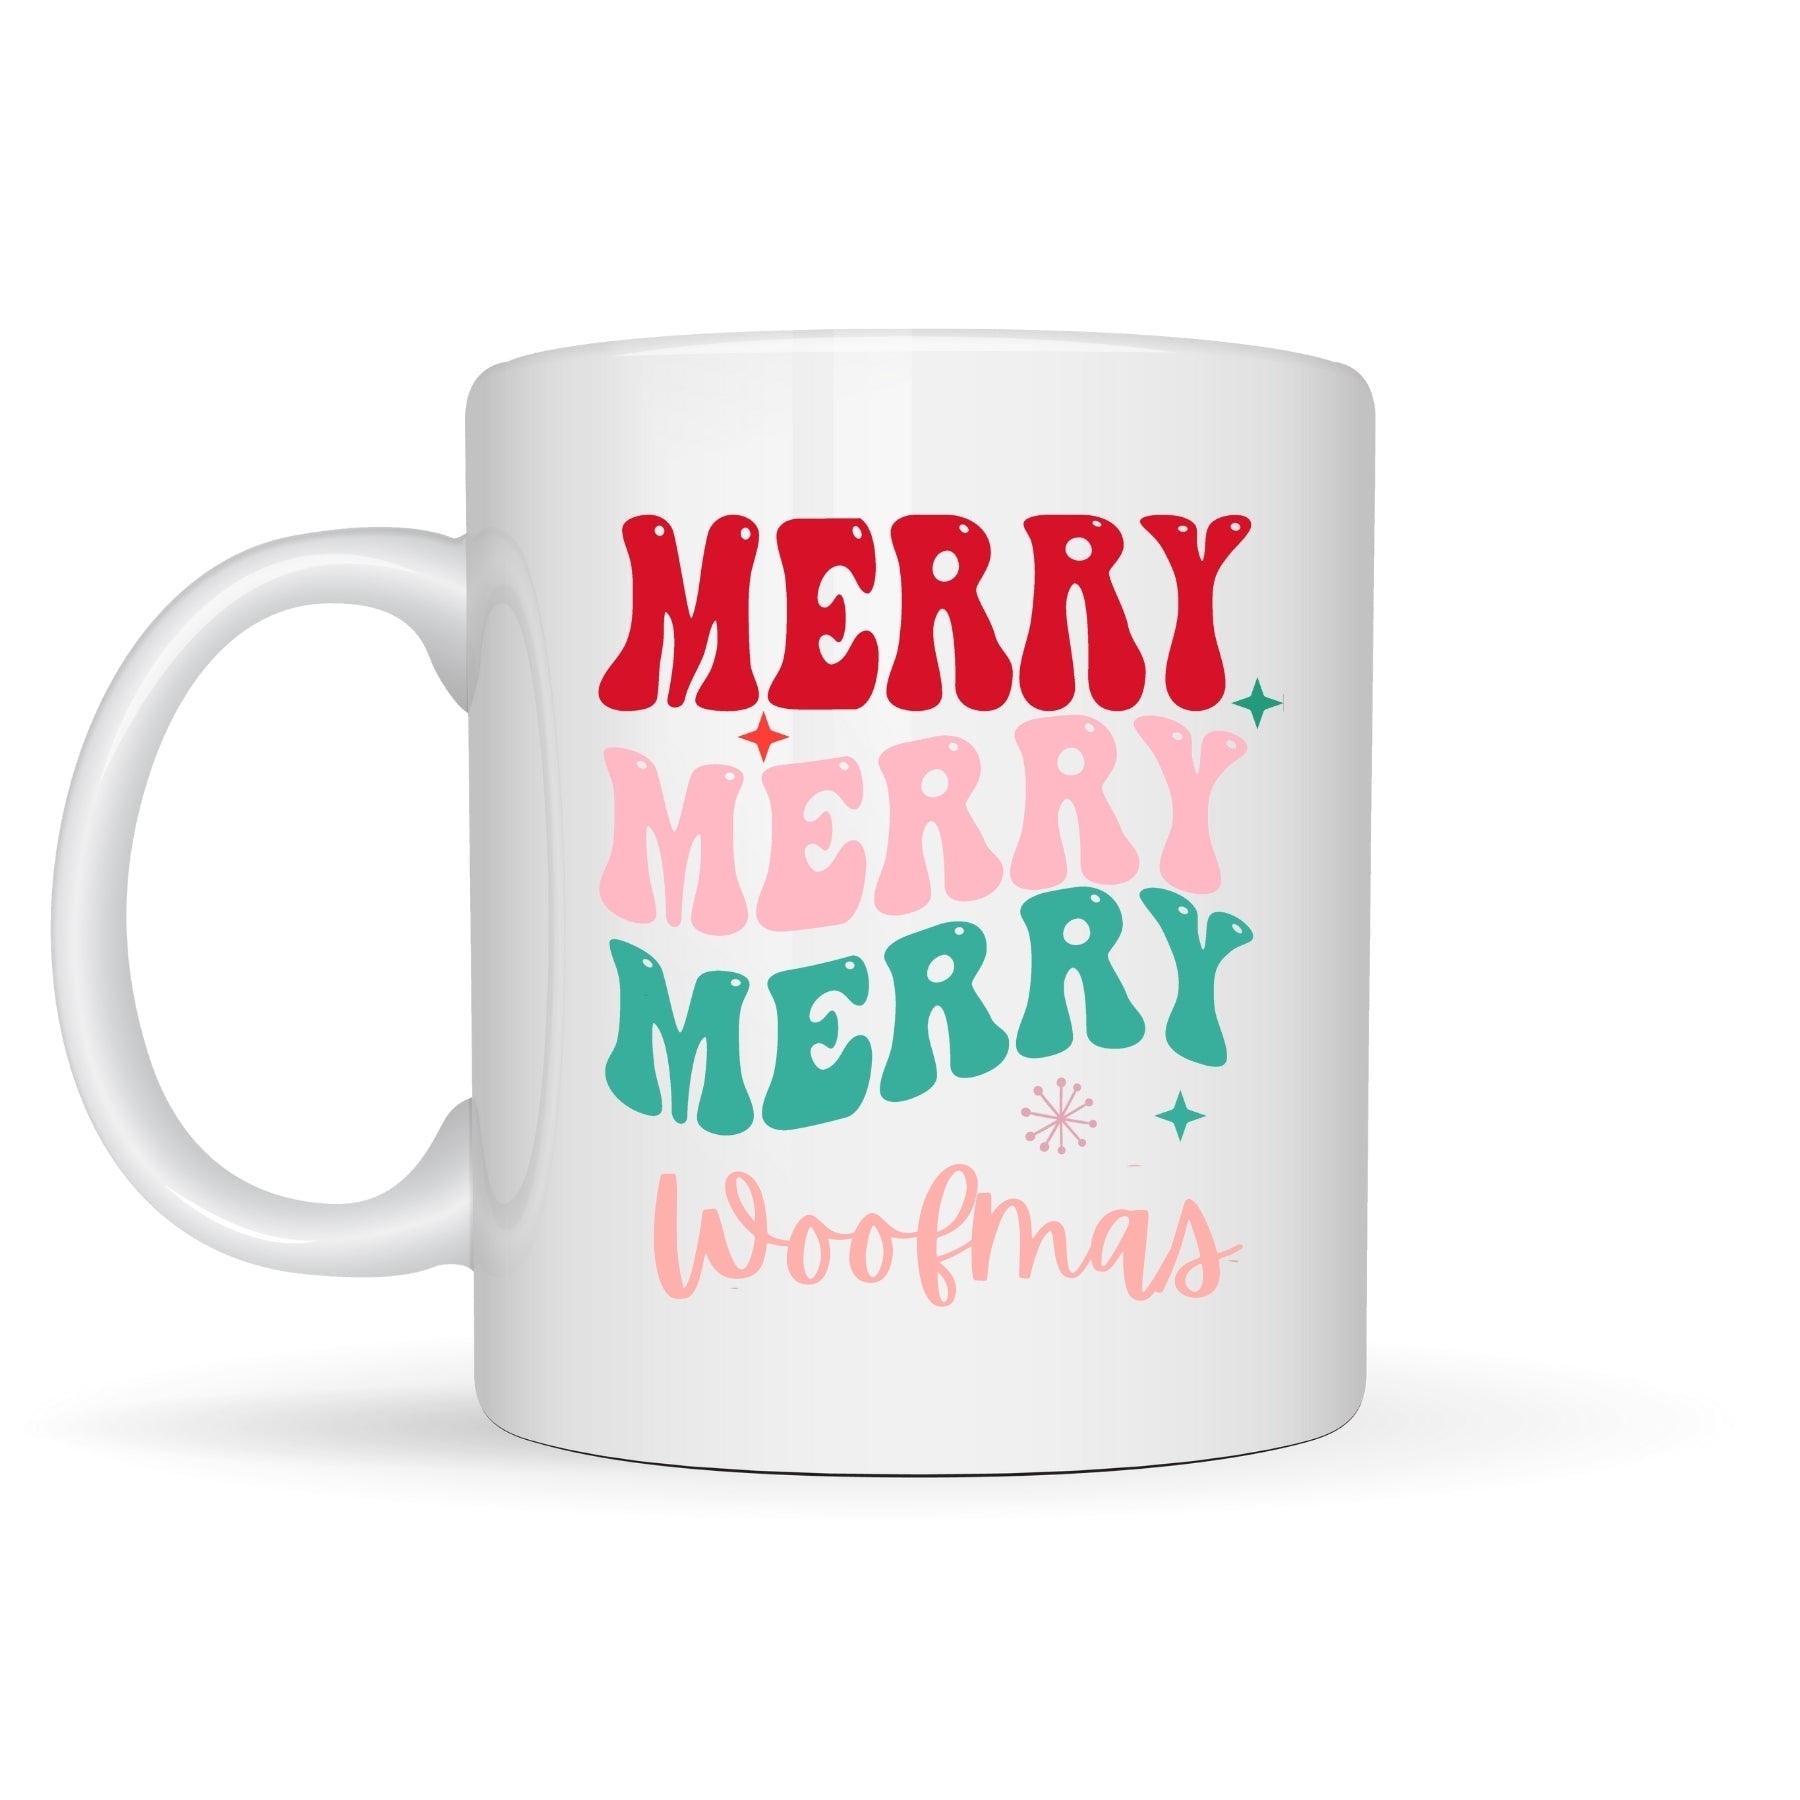 Merry, Merry, Merry Woofmas Mug - Pooch Luxury